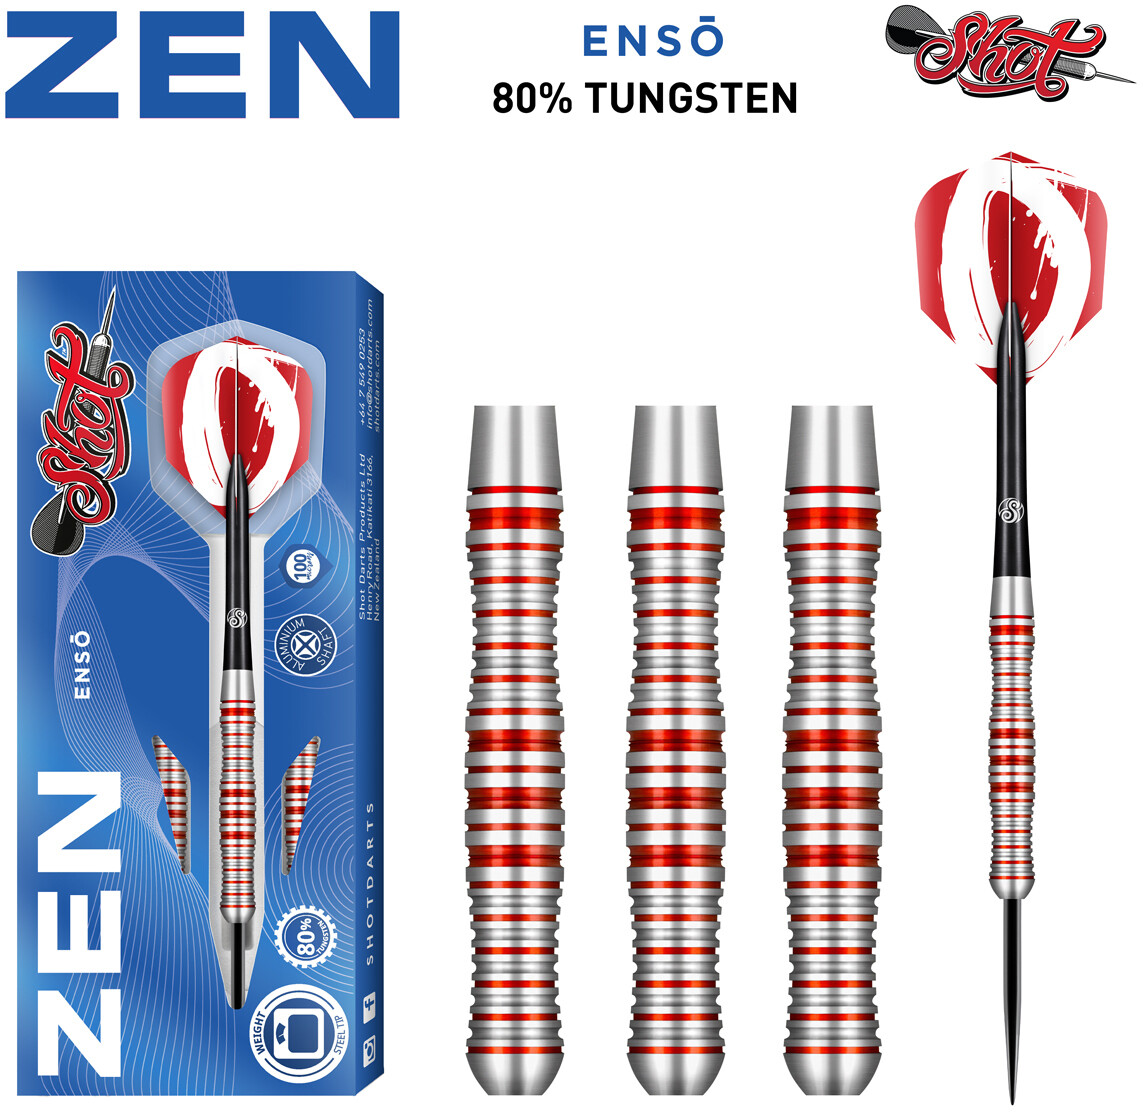 Zen Enso Steel Tip Dart Set-80% Tungsten-24gm